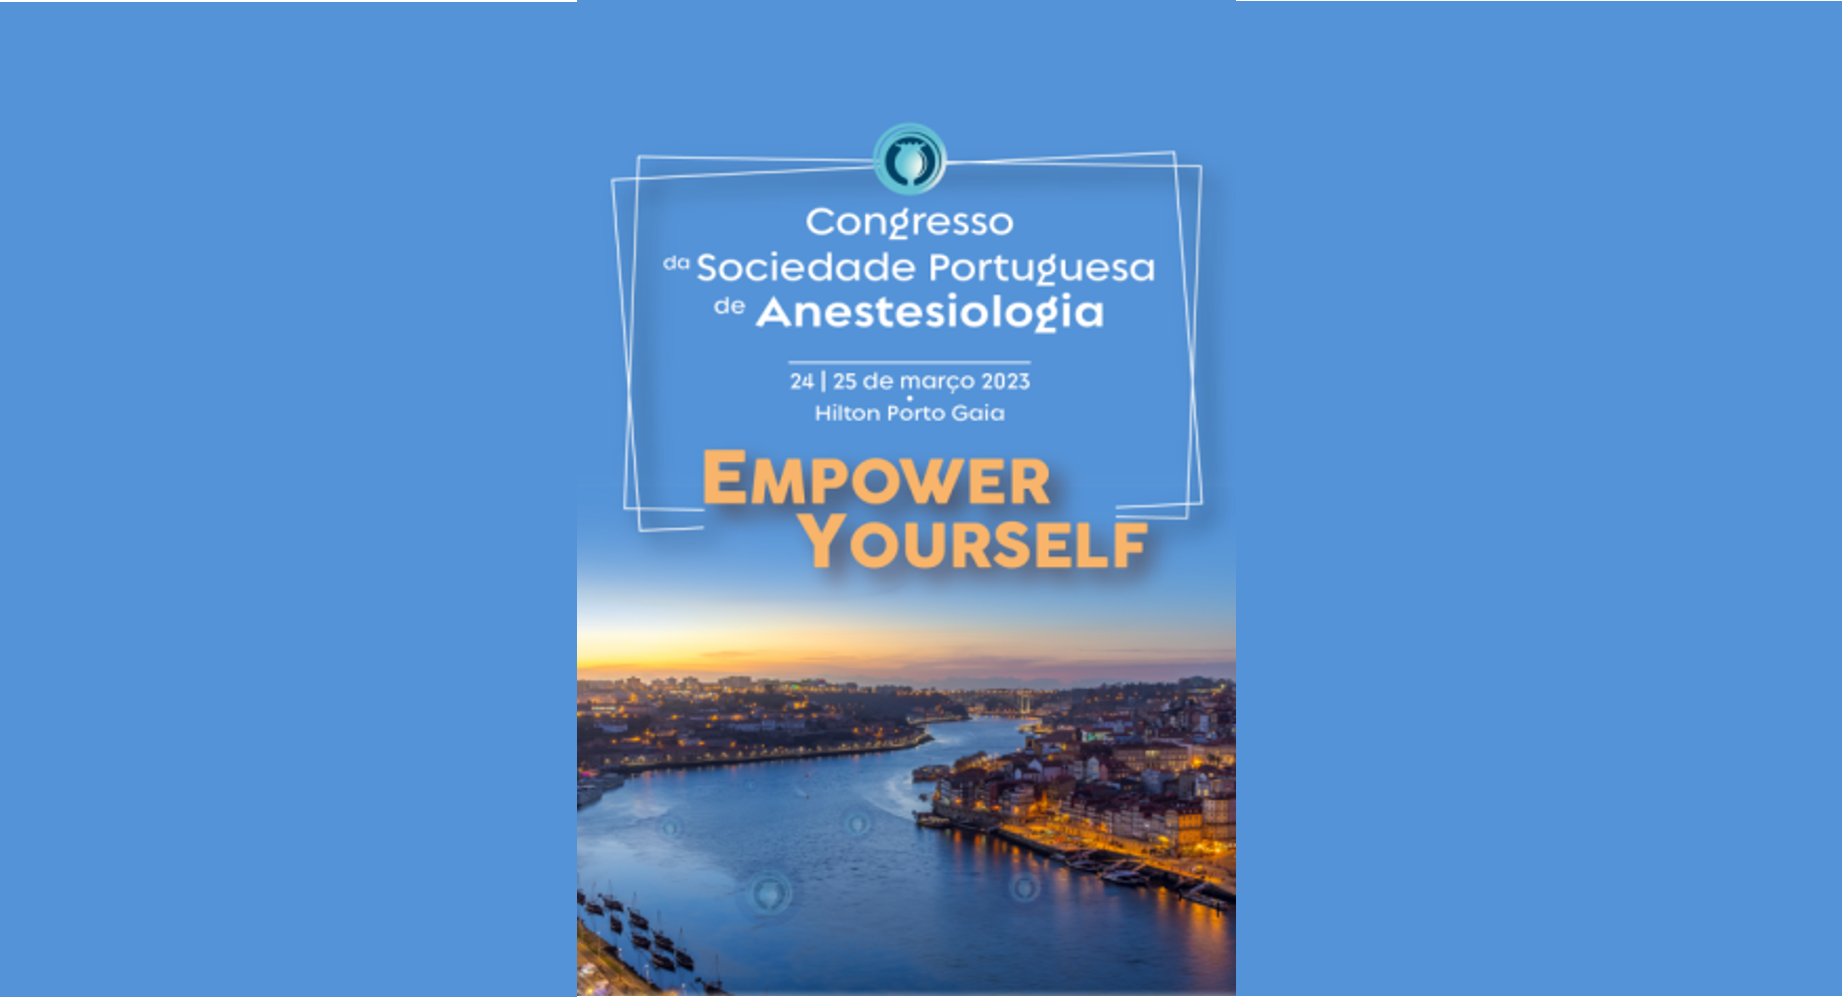 Congresso da Sociedade Portuguesa de Anestesiologia